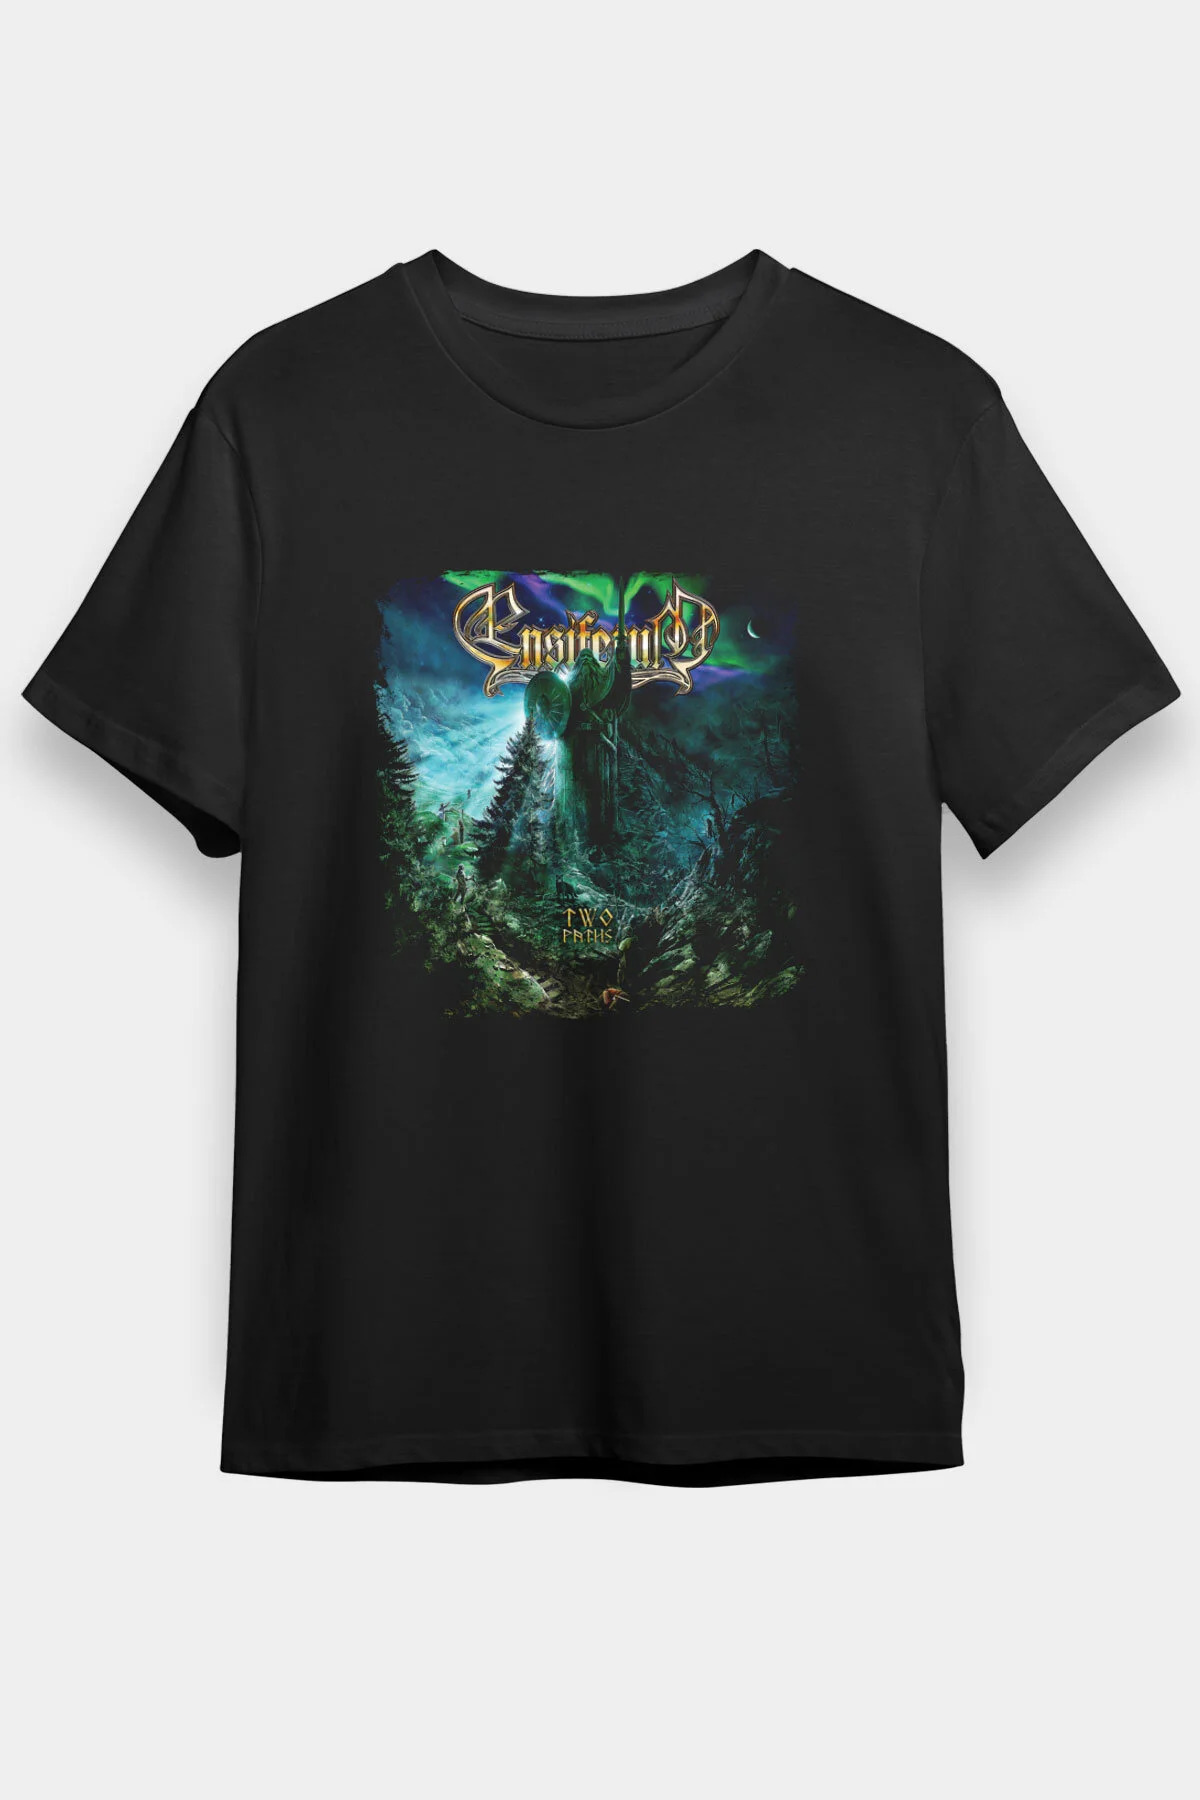 Ensiferum  T shirt , Music Band ,Unisex Tshirt 08/